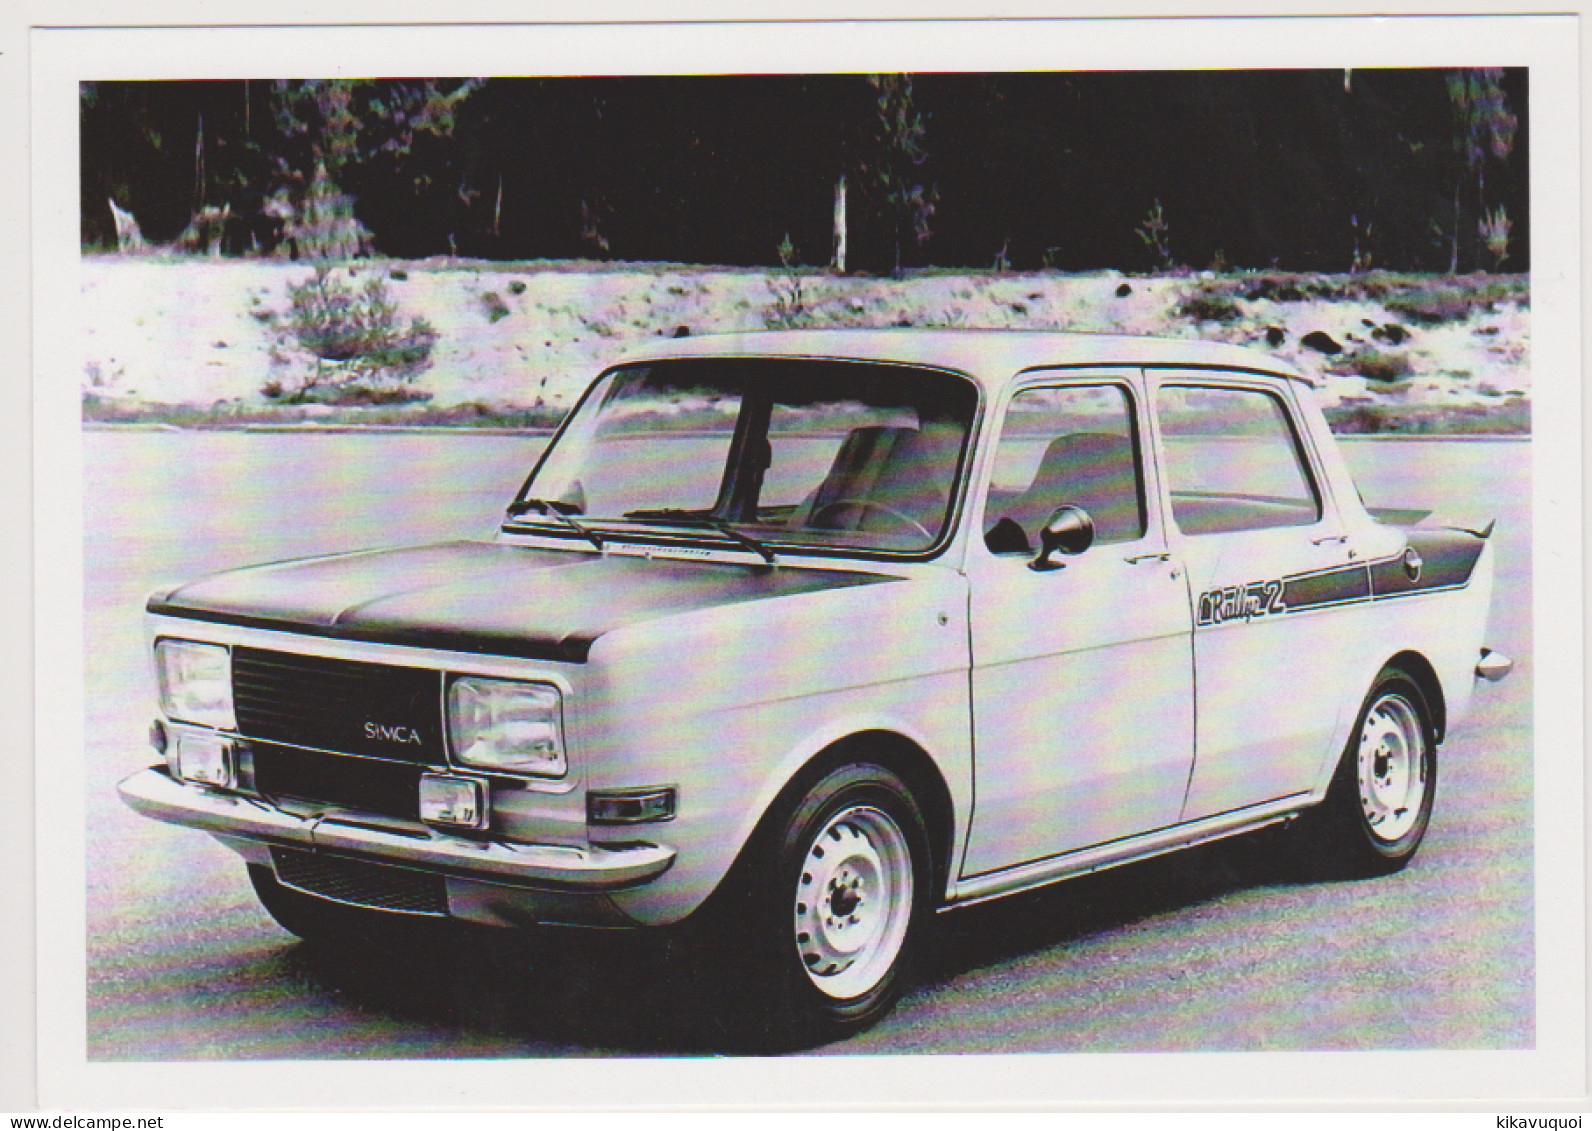 SIMCA 1000 RALLYE 2 DE 1972 A 1977 - CARTE POSTALE 10X15 CM NEUF - Passenger Cars